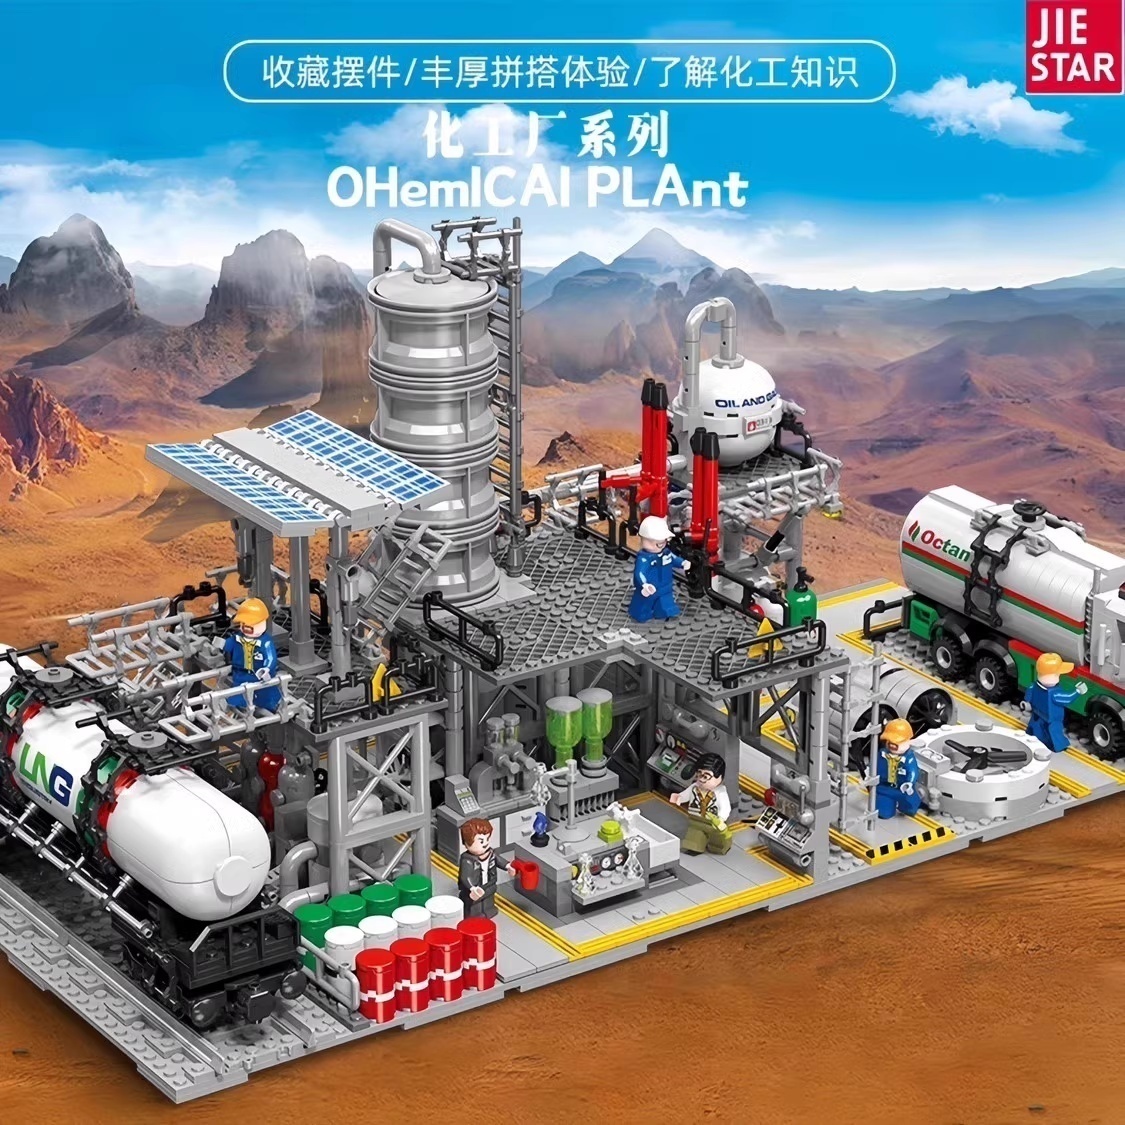 中国积木杰星城市化工厂天然气储备中心工程车男孩子拼装玩具礼物